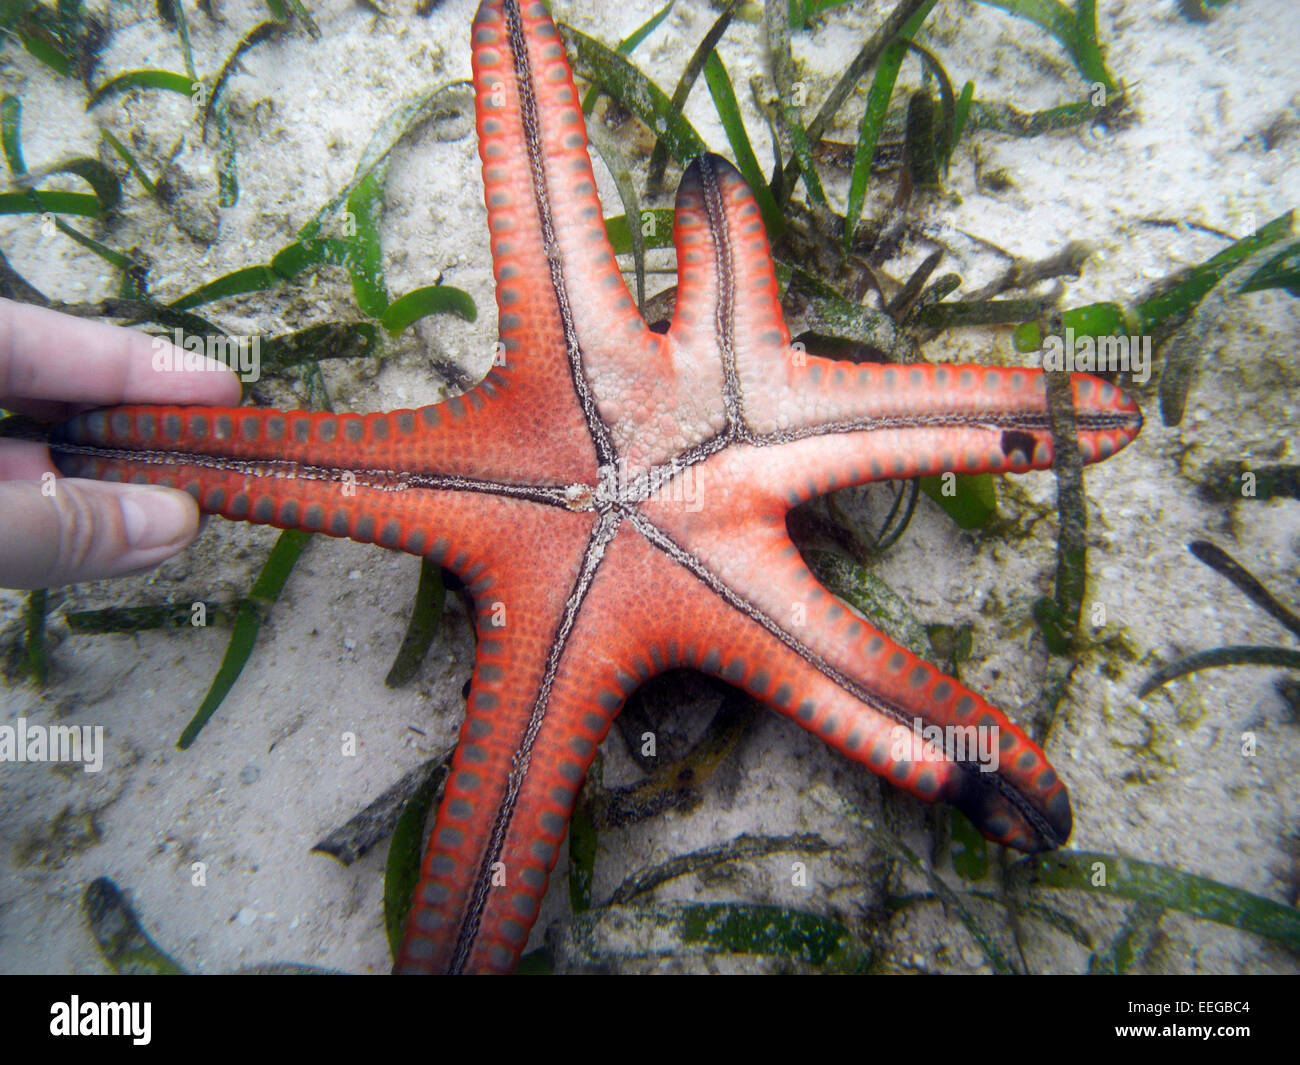 Protoreaster starfish presentando insolita morfologia del braccio - forse il recupero da una ferita? Raja Ampat, provincia di Papua, Indonesia Foto Stock